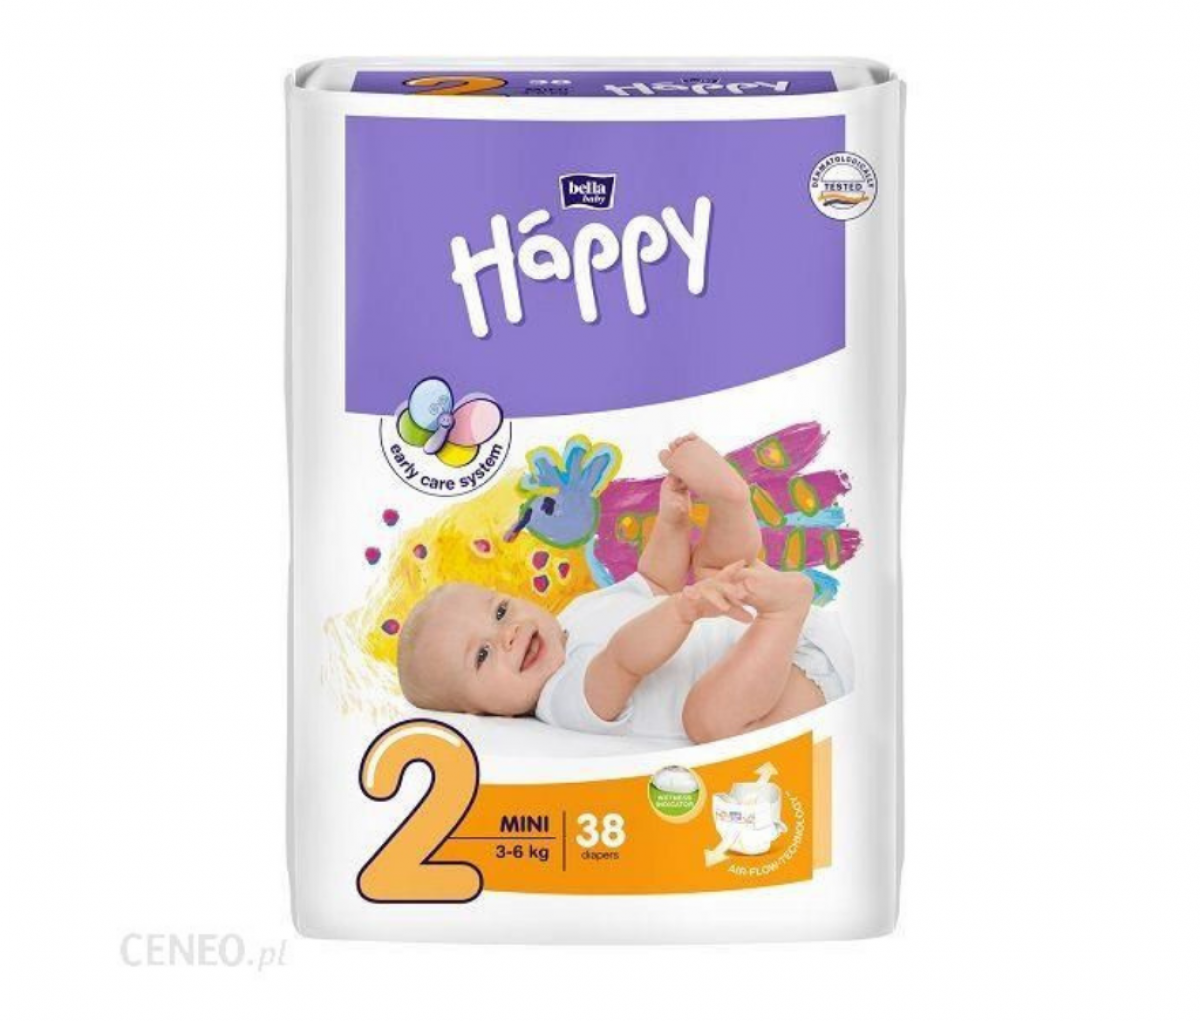 TZMO Happy Diaper Mini A38